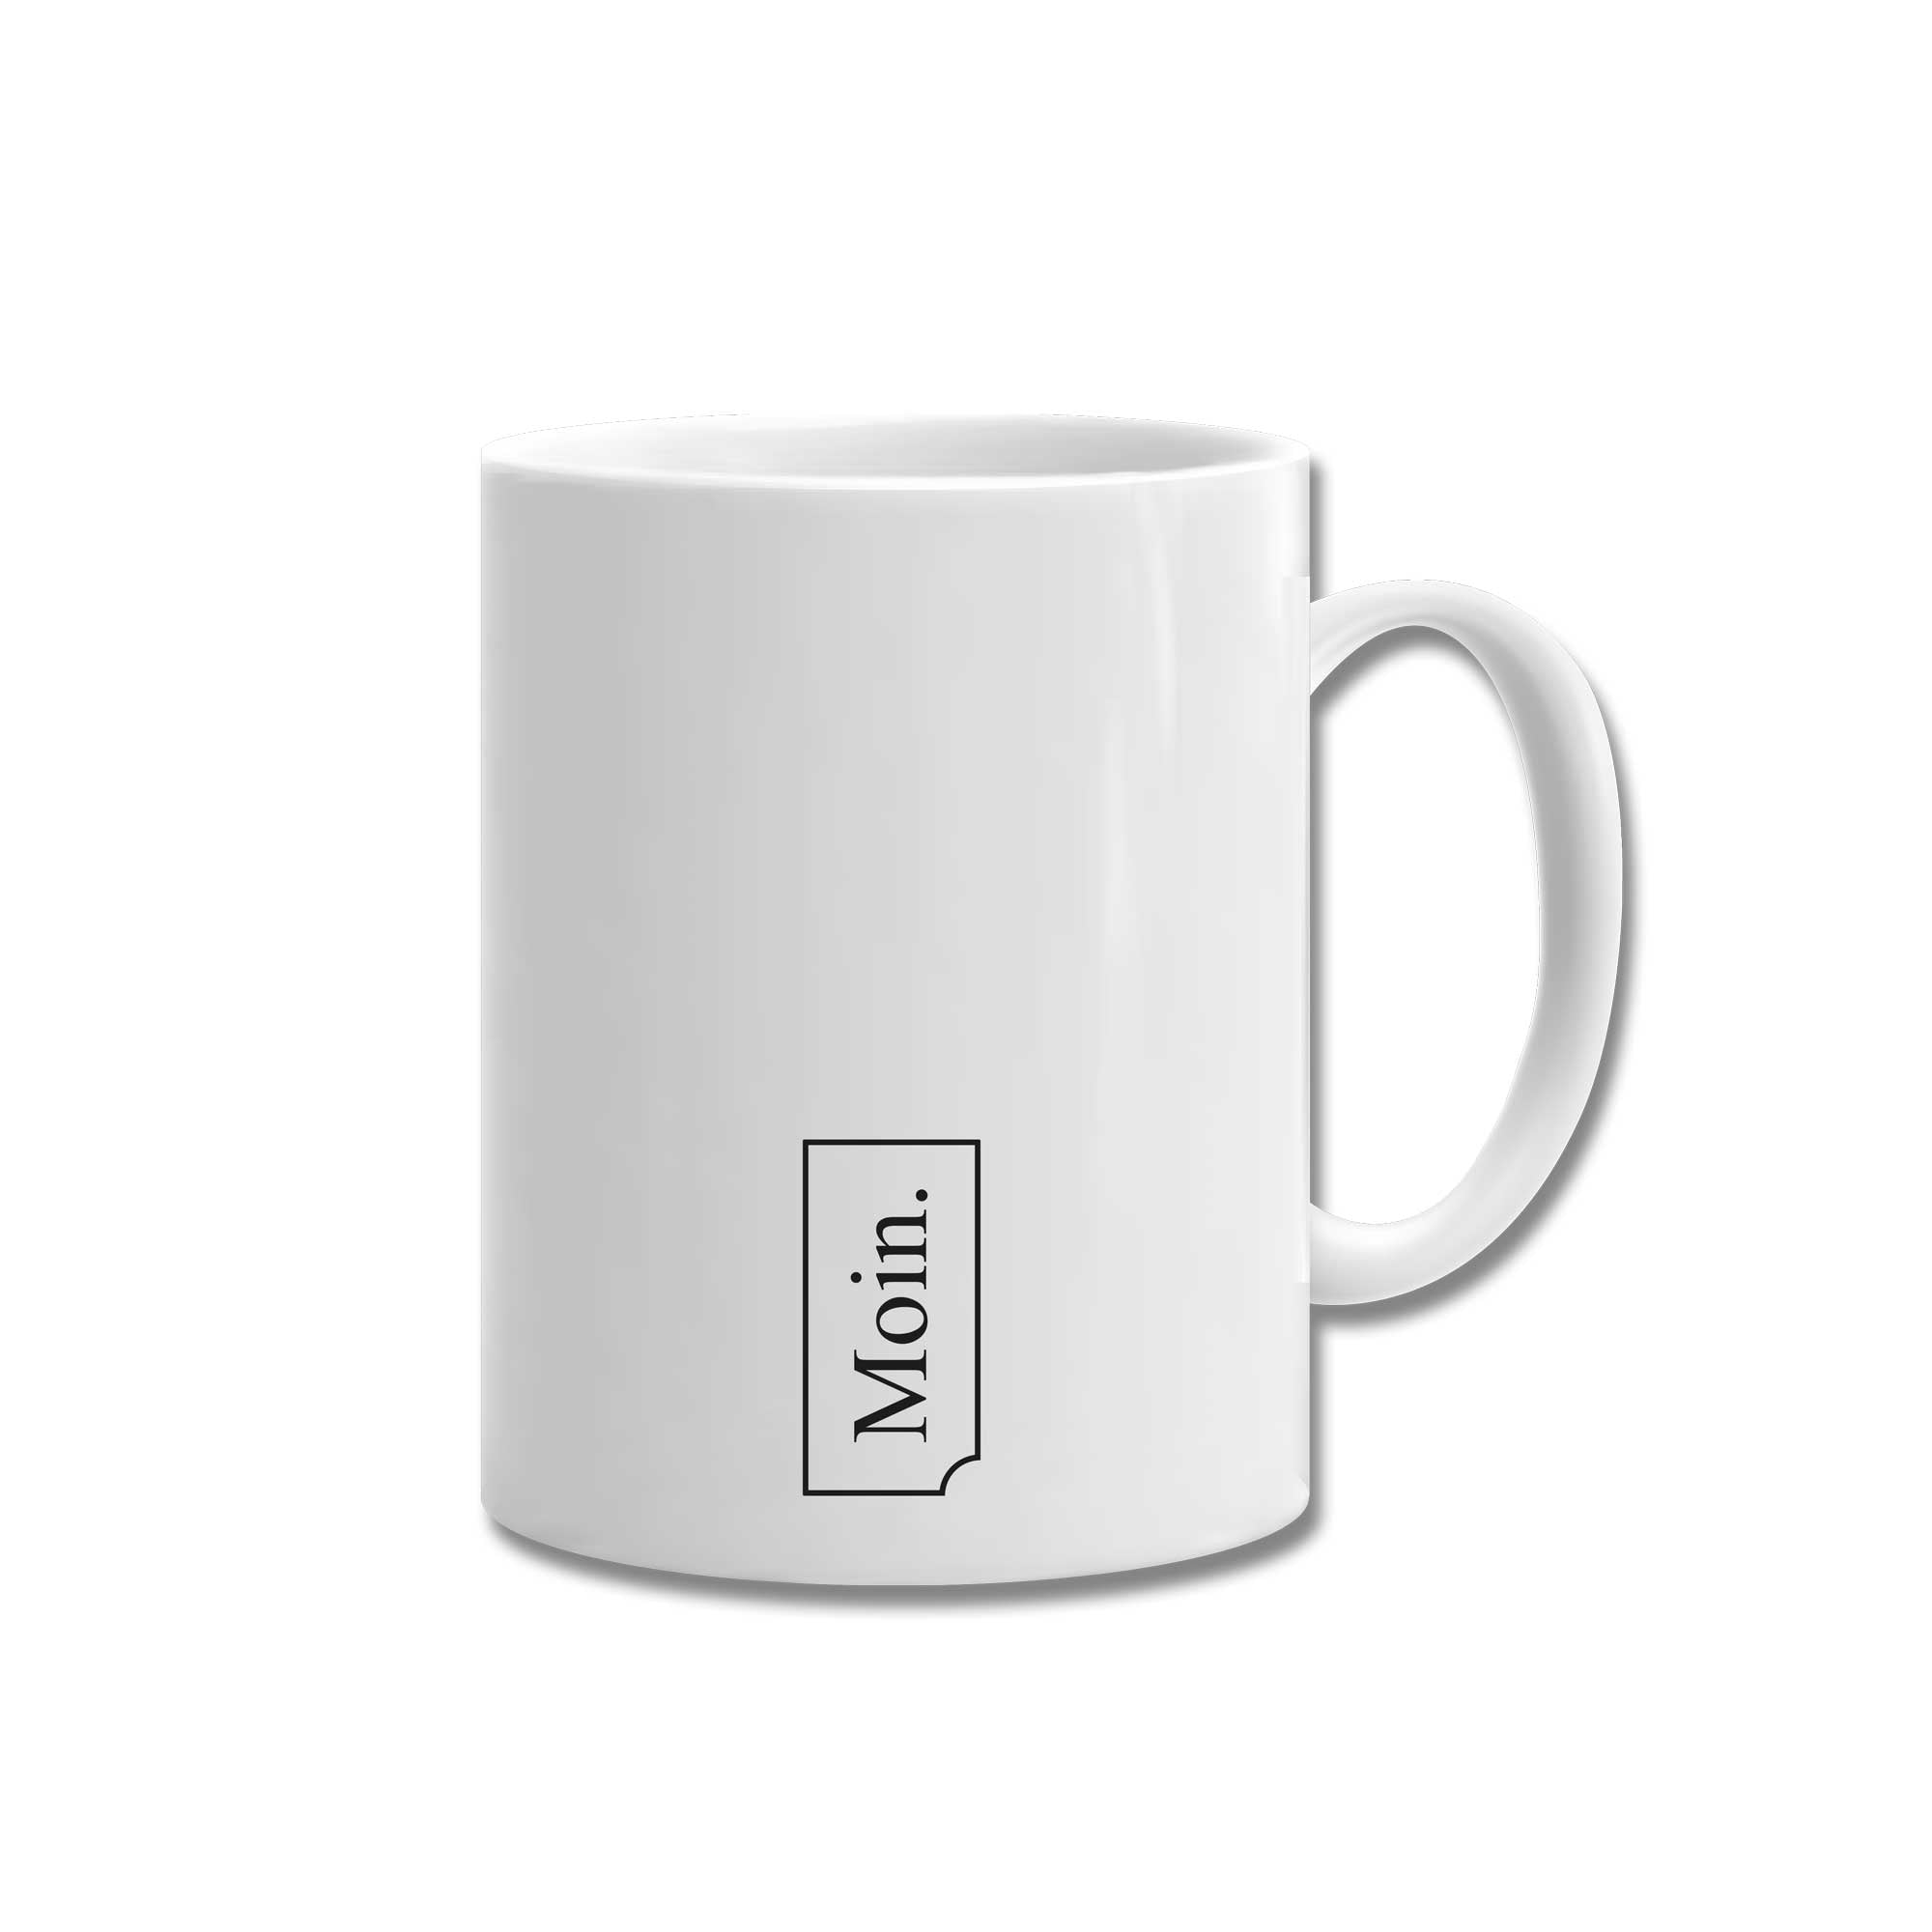 Personal ceramic mug